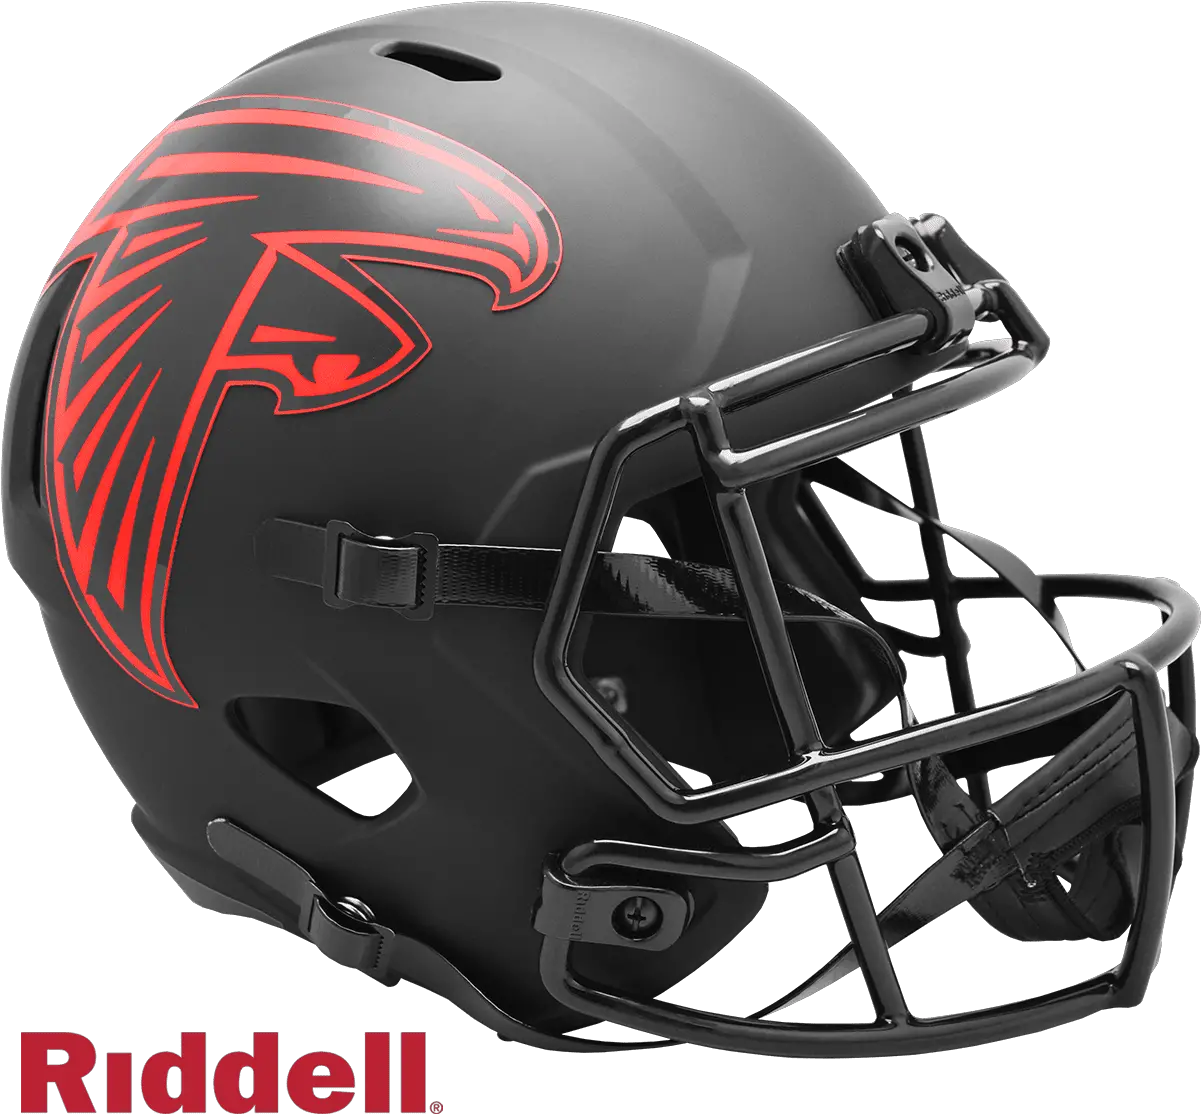 Eclipse Alternate Speed Riddell Full Baltimore Ravens Helmet Full Size Png Falcons Helmet Png